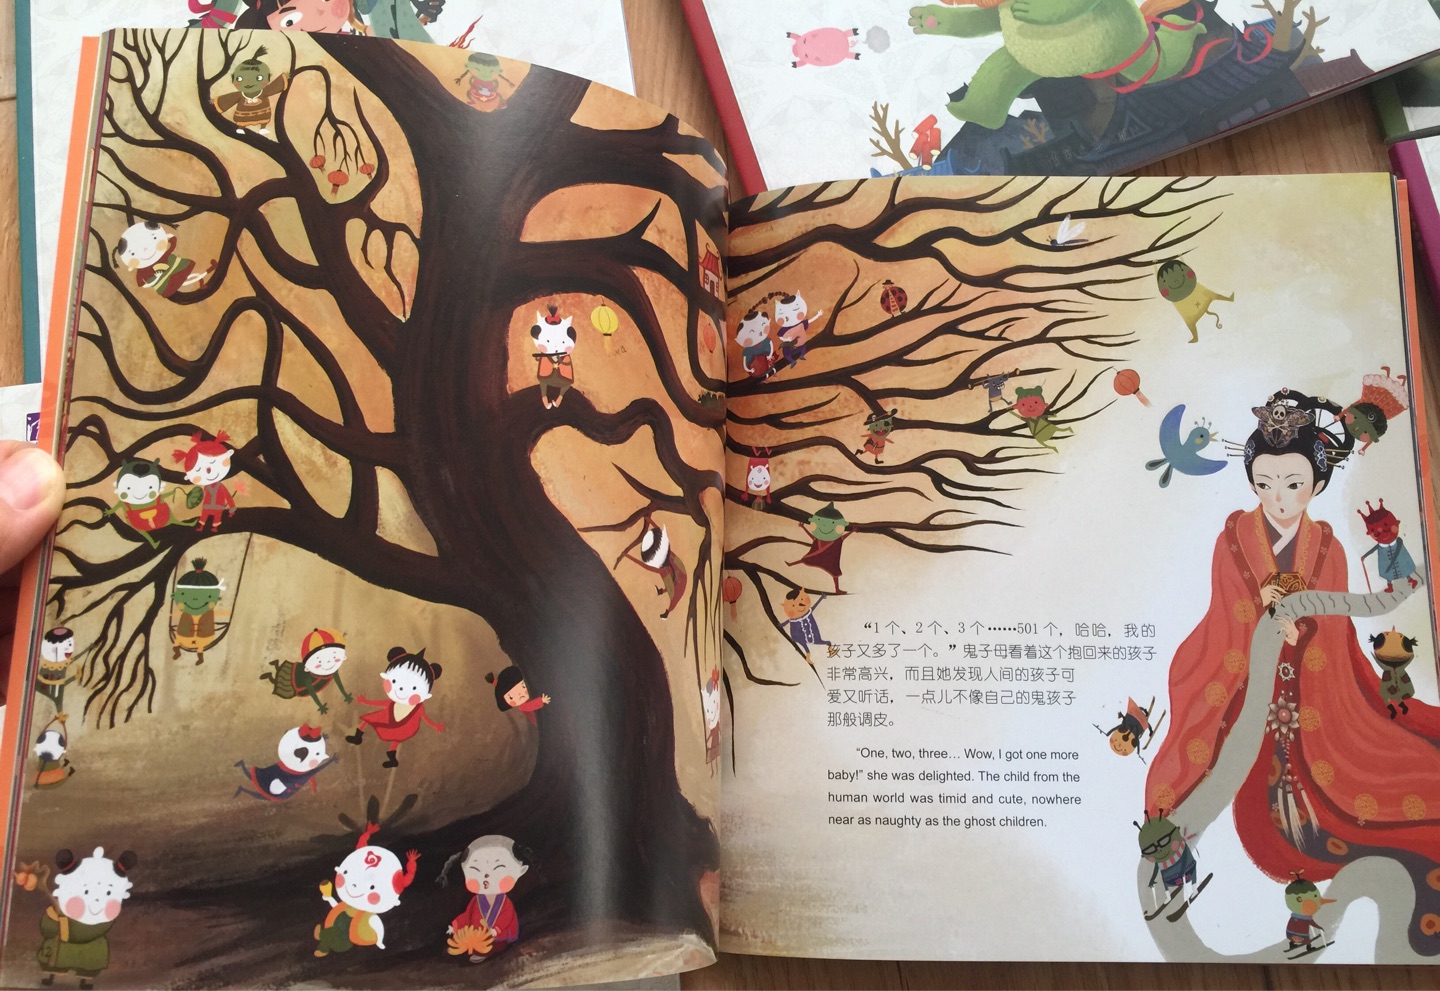 确实很快，书当新年礼物很好，让孩子了解下中国的传统文化，很佩服这个有爱的爸爸画给孩子的书，孩子很喜欢看，还子很喜欢动手做手工，一点不难，而且做出来超漂亮，超赞！！